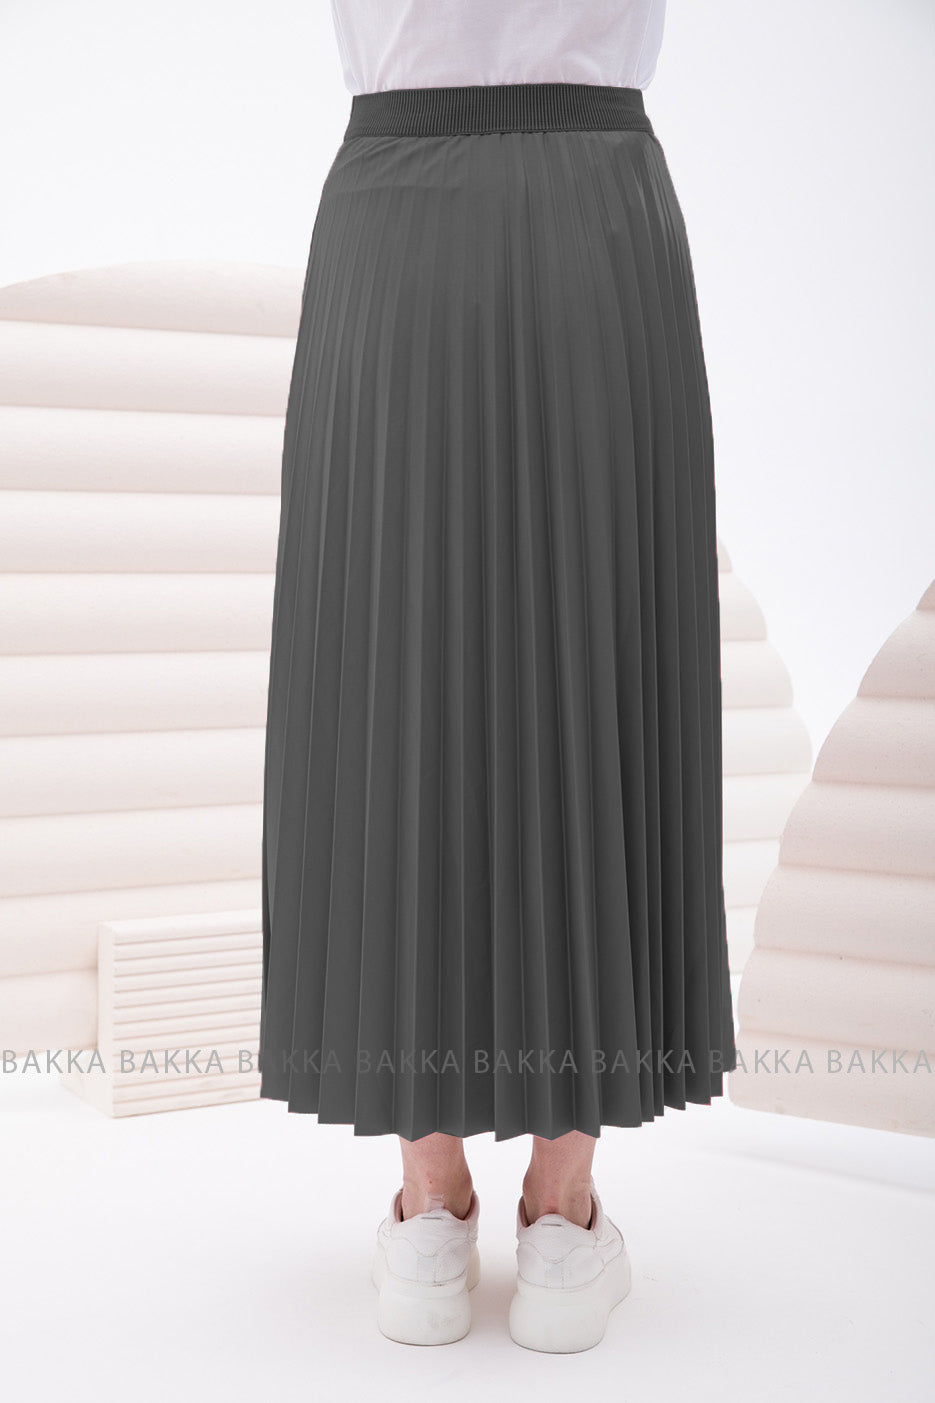 Skirt - 2170 - Dark gray - bakkaclothing